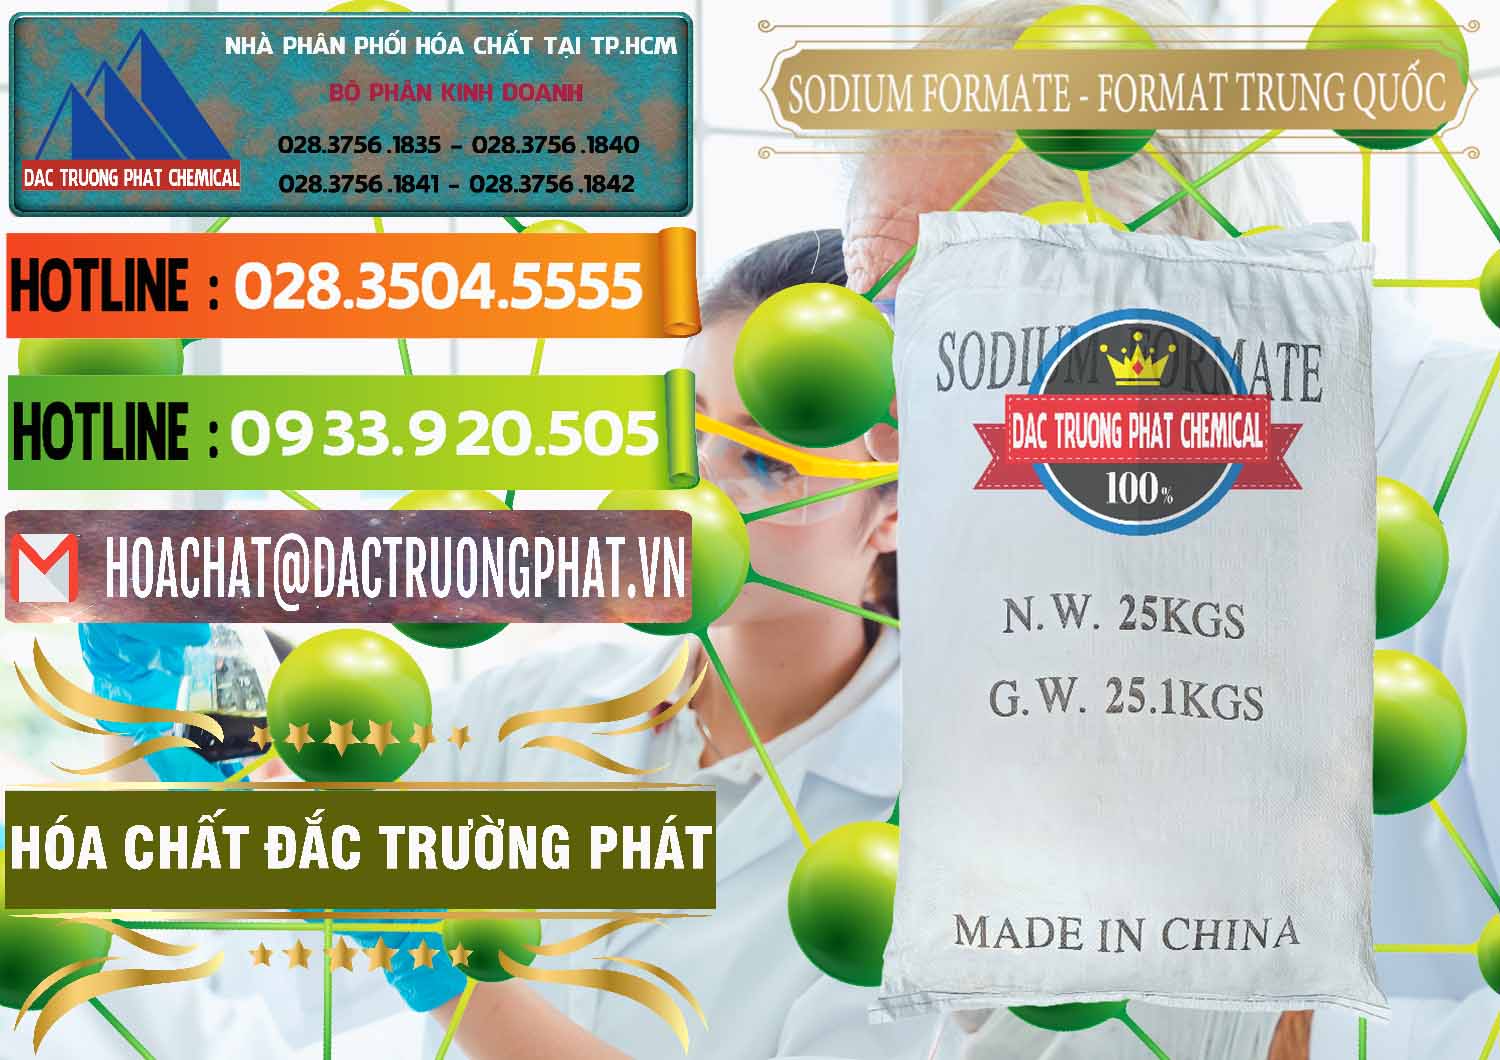 Công ty chuyên bán và cung cấp Sodium Formate - Natri Format Trung Quốc China - 0142 - Công ty phân phối và bán hóa chất tại TP.HCM - cungcaphoachat.com.vn